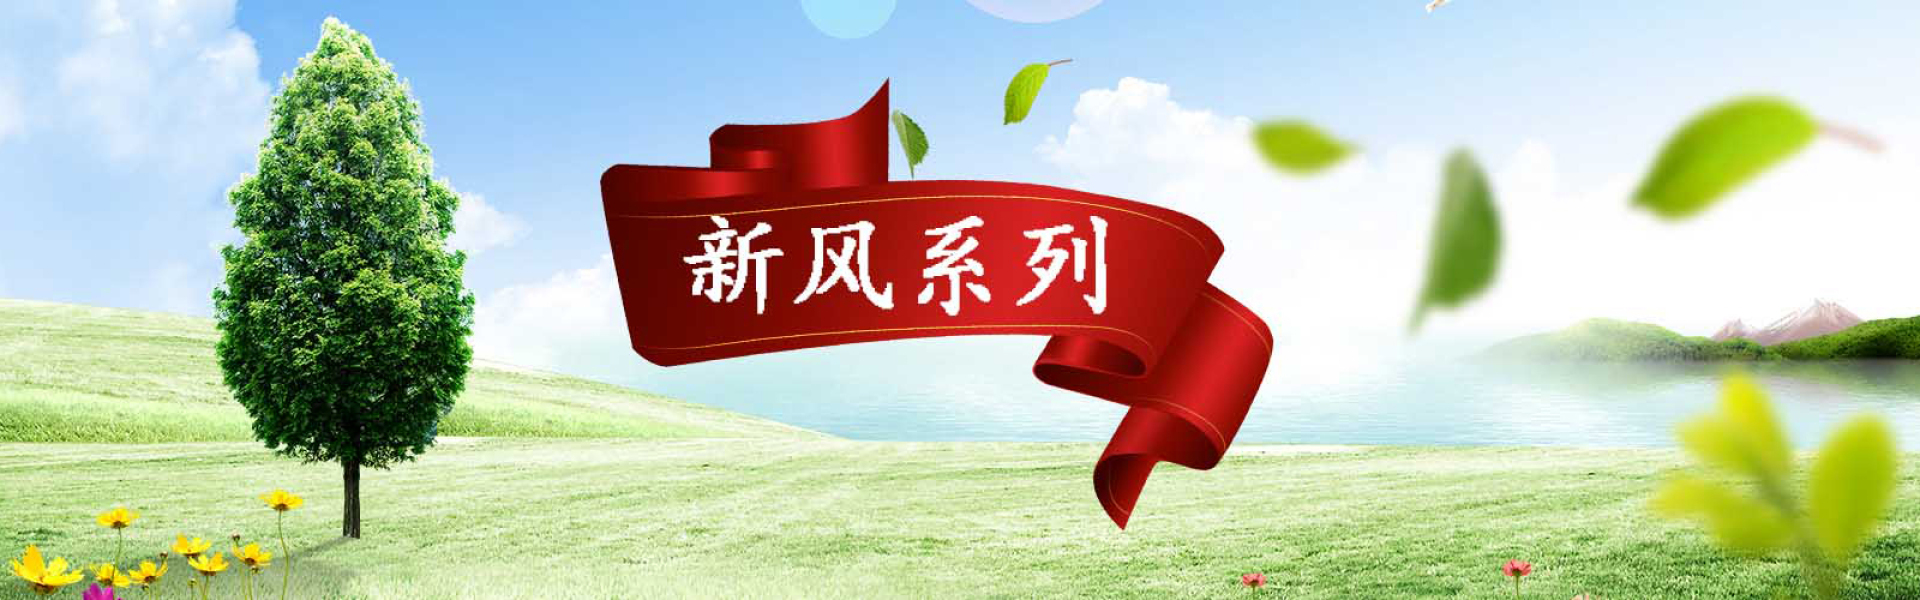 金恩機電網站大圖-武漢新風系統